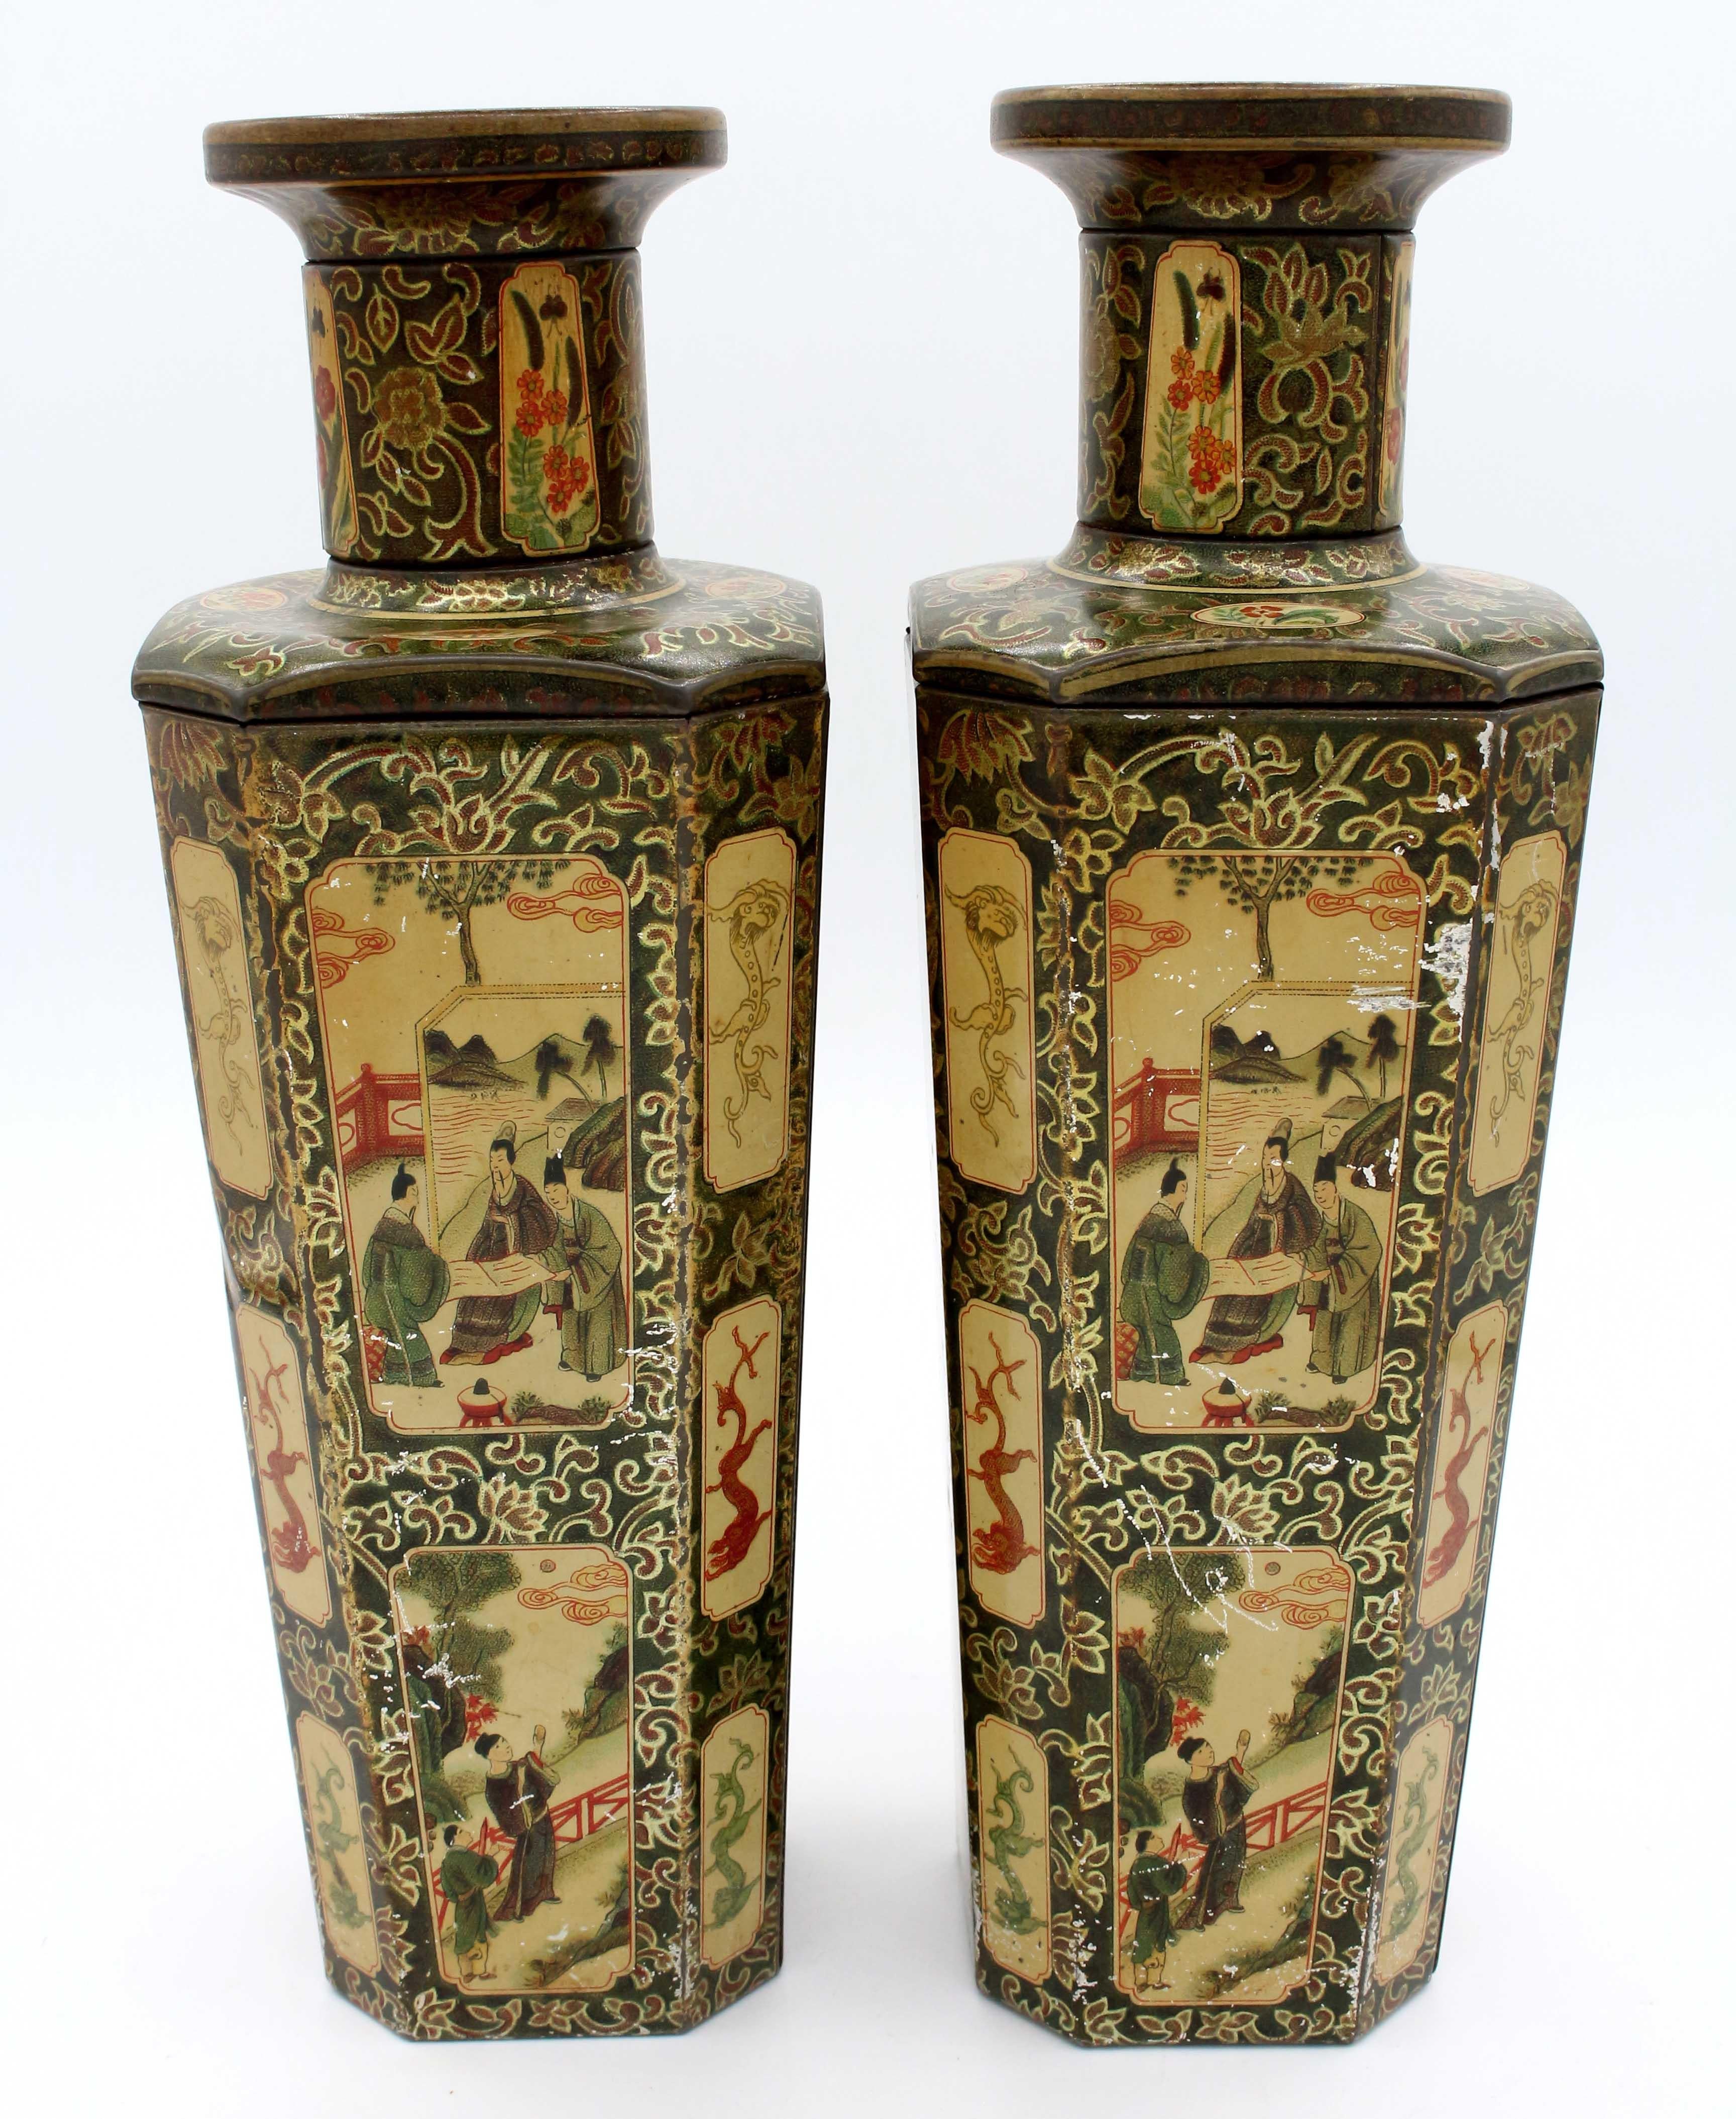 Paire de boîtes à biscuits en forme de vase par Huntley & Palmer, 1928, anglais. Faux vases de Worcester d'après le XVIIIe siècle ; dessins de chinoiserie pour vases de garniture. Bon état général compte tenu de l'âge et de l'utilisation, légères